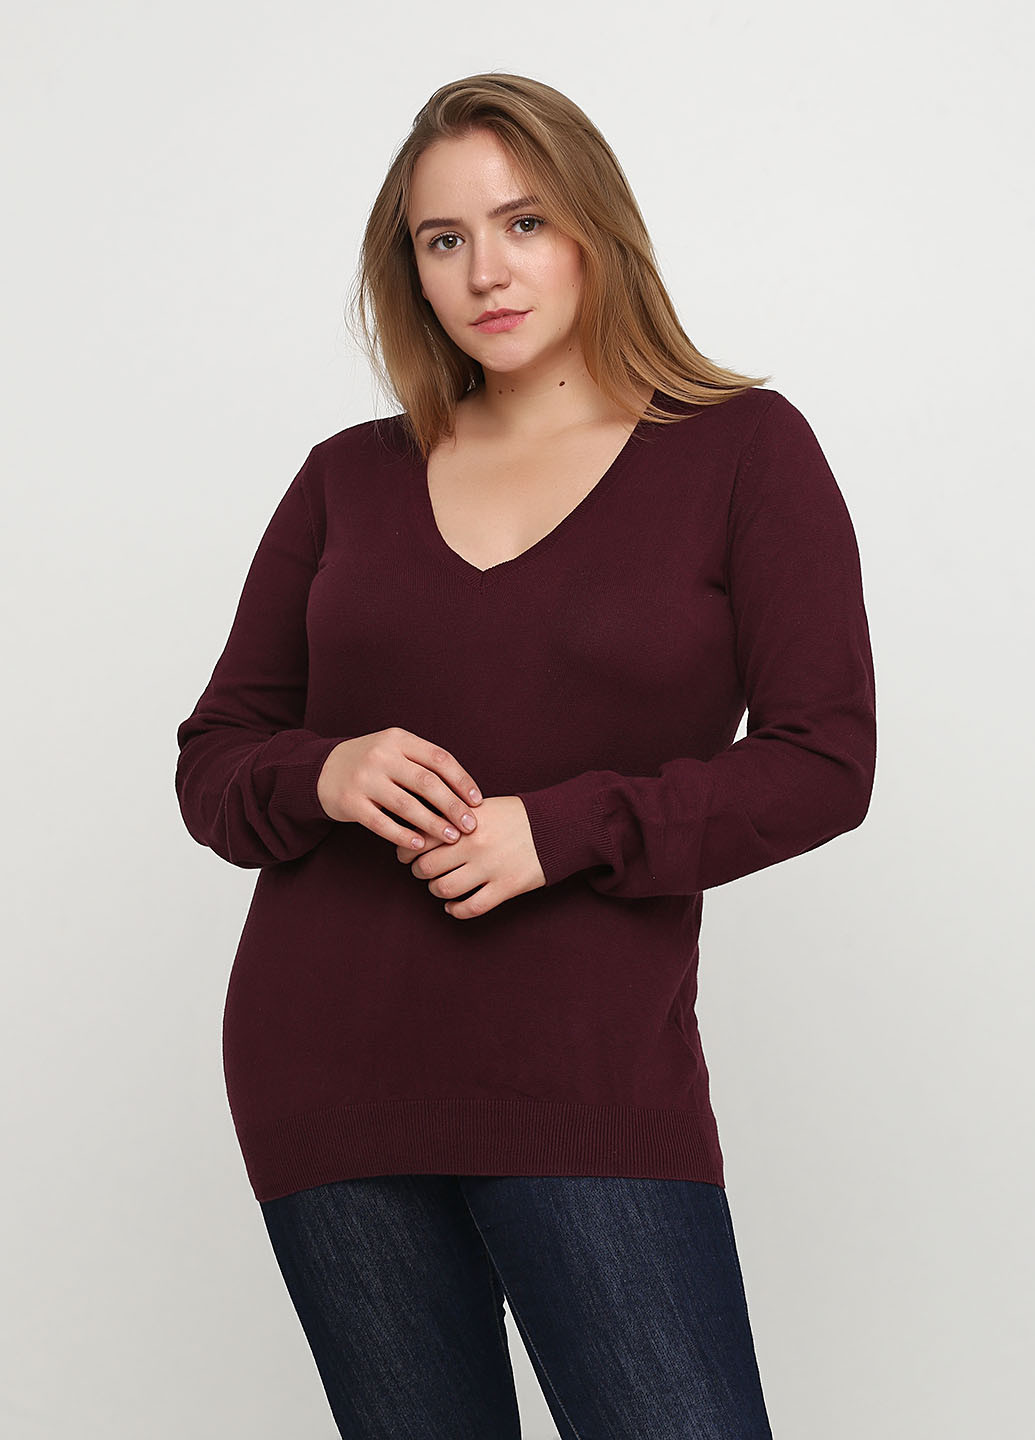 Бордовый демисезонный пуловер пуловер Colours